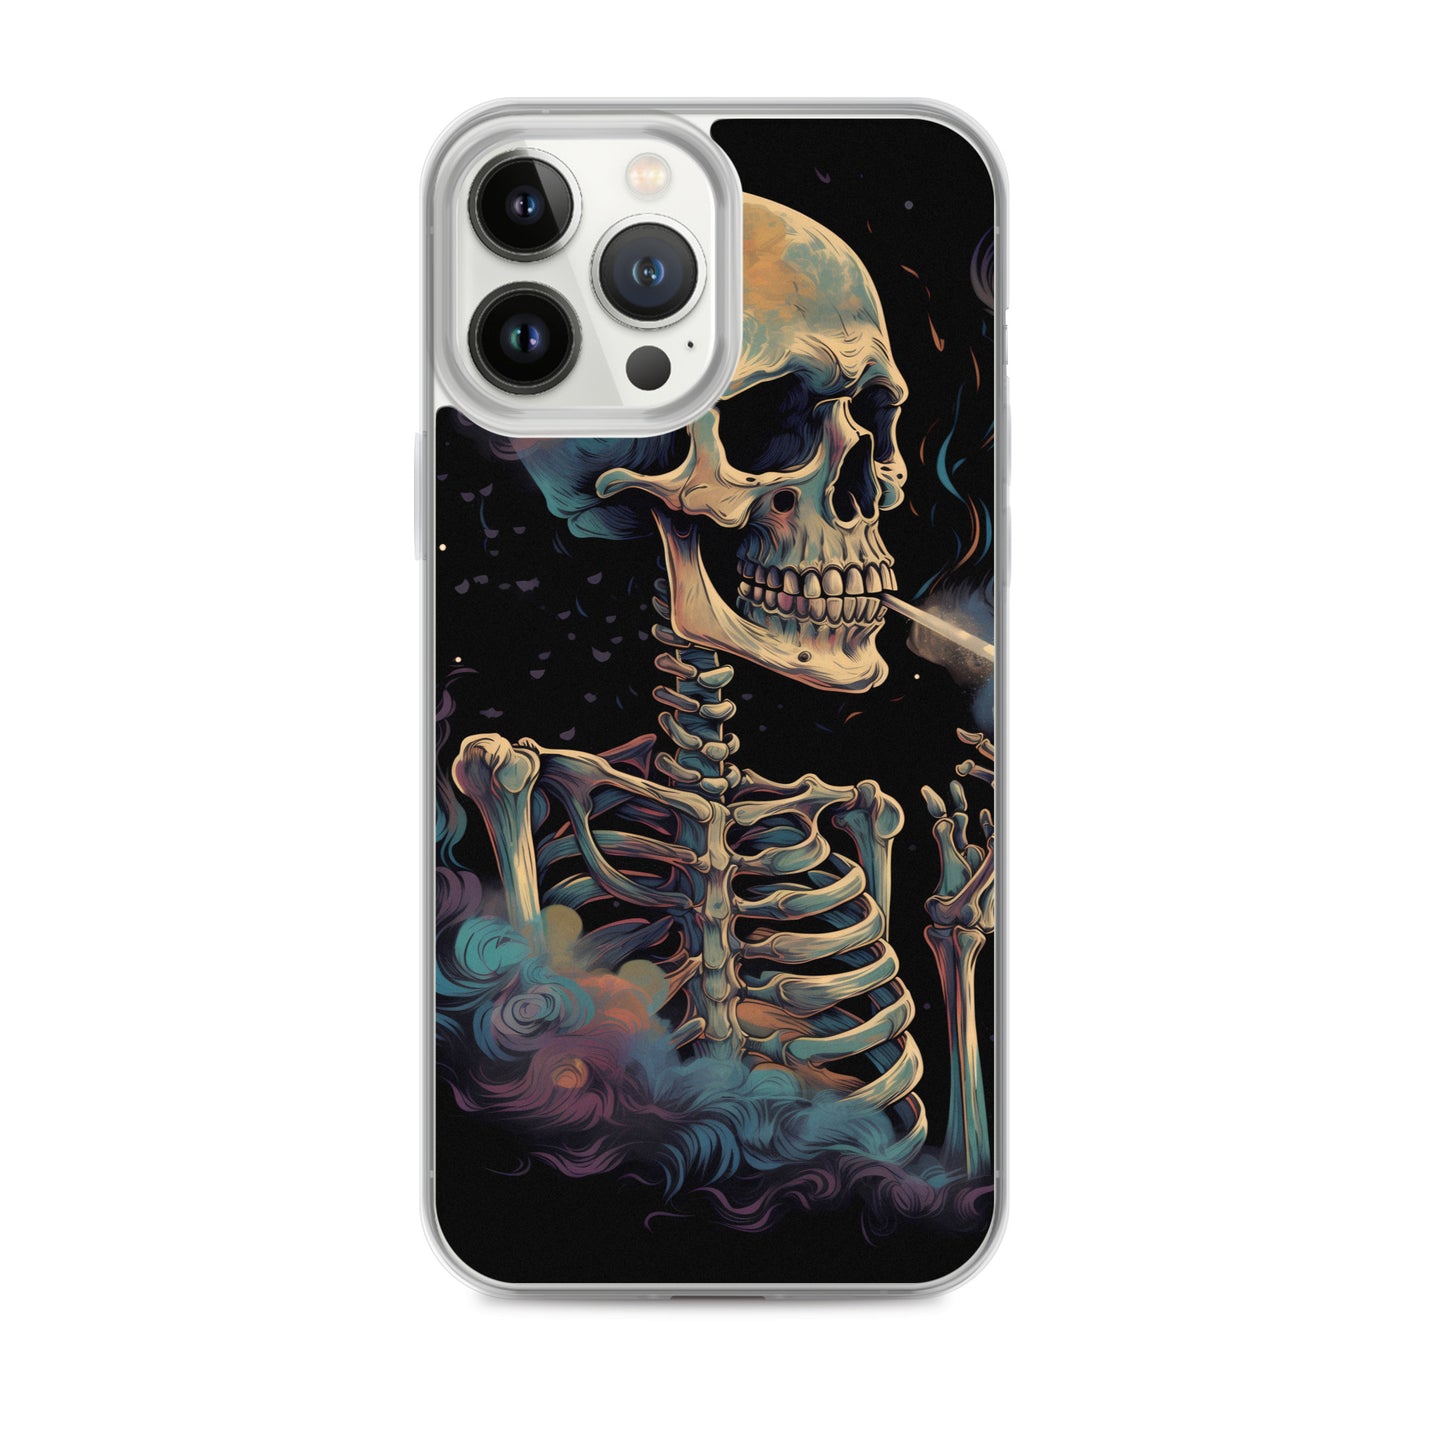 iPhone Case - Cosmic Skeleton Smoking